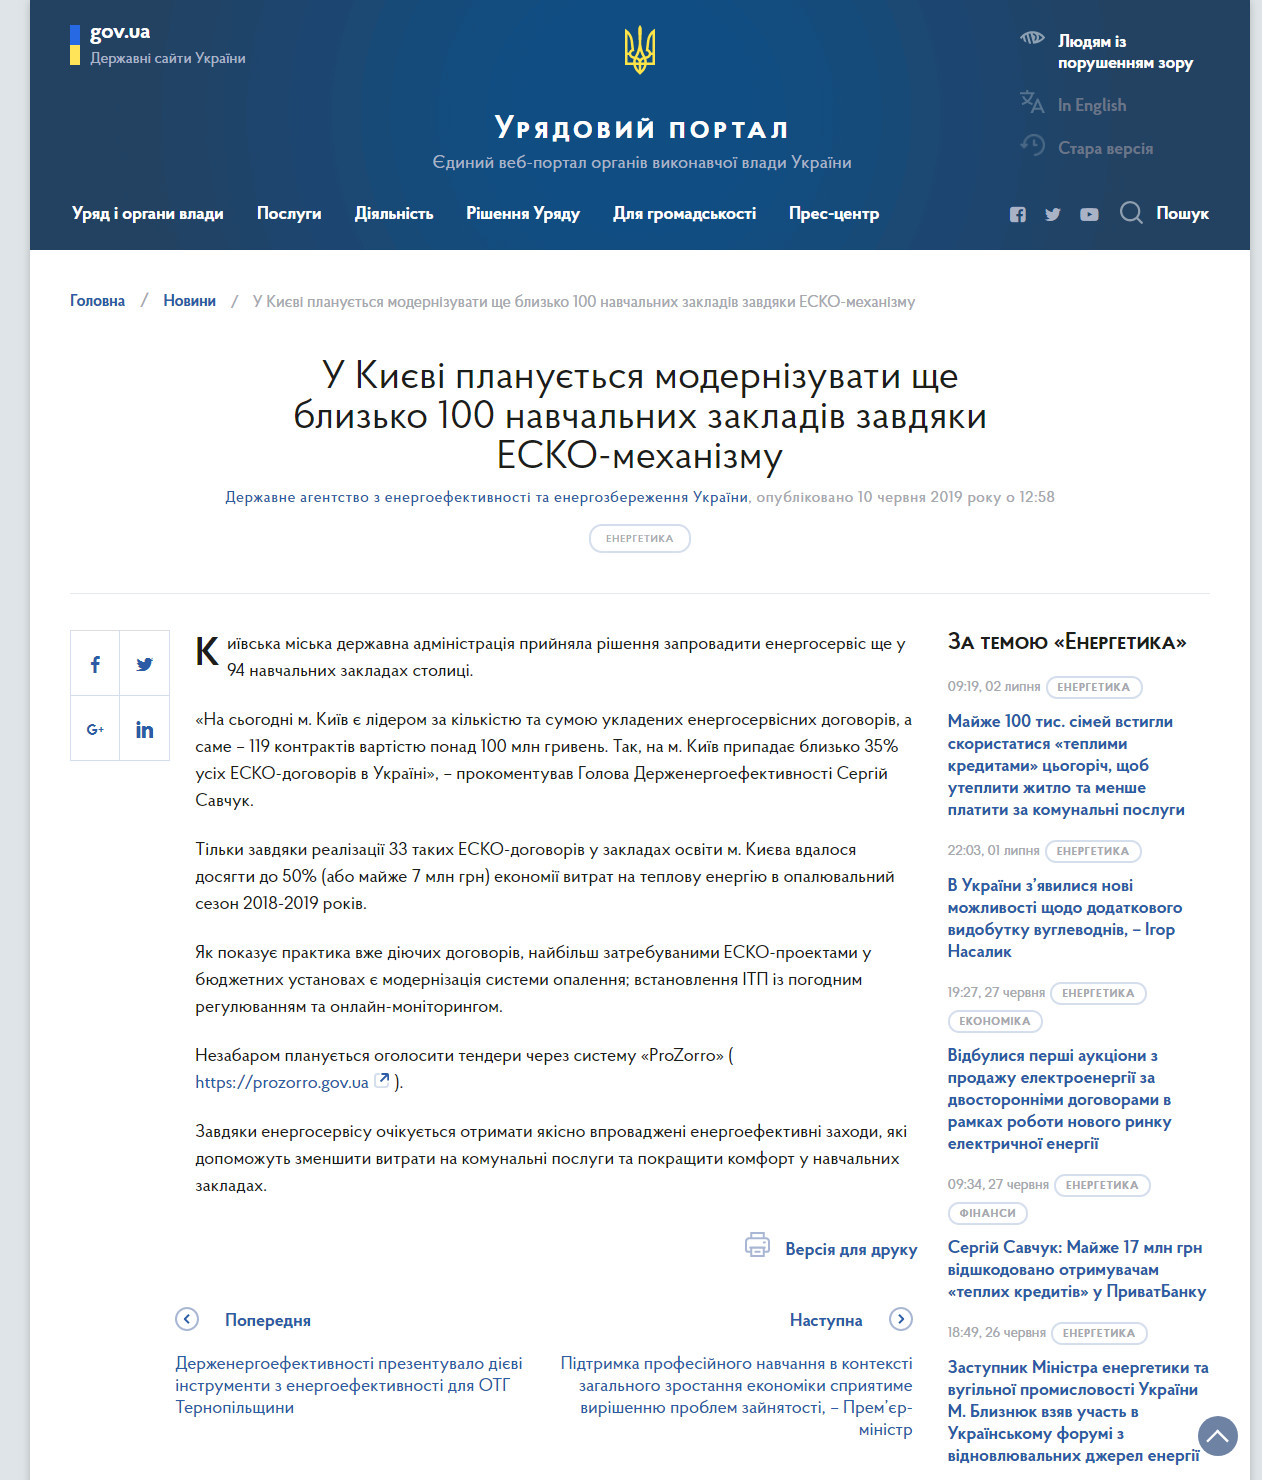 https://www.kmu.gov.ua/ua/news/u-kiyevi-planuyetsya-modernizuvati-shche-blizko-100-navchalnih-zakladiv-zavdyaki-esko-mehanizmu